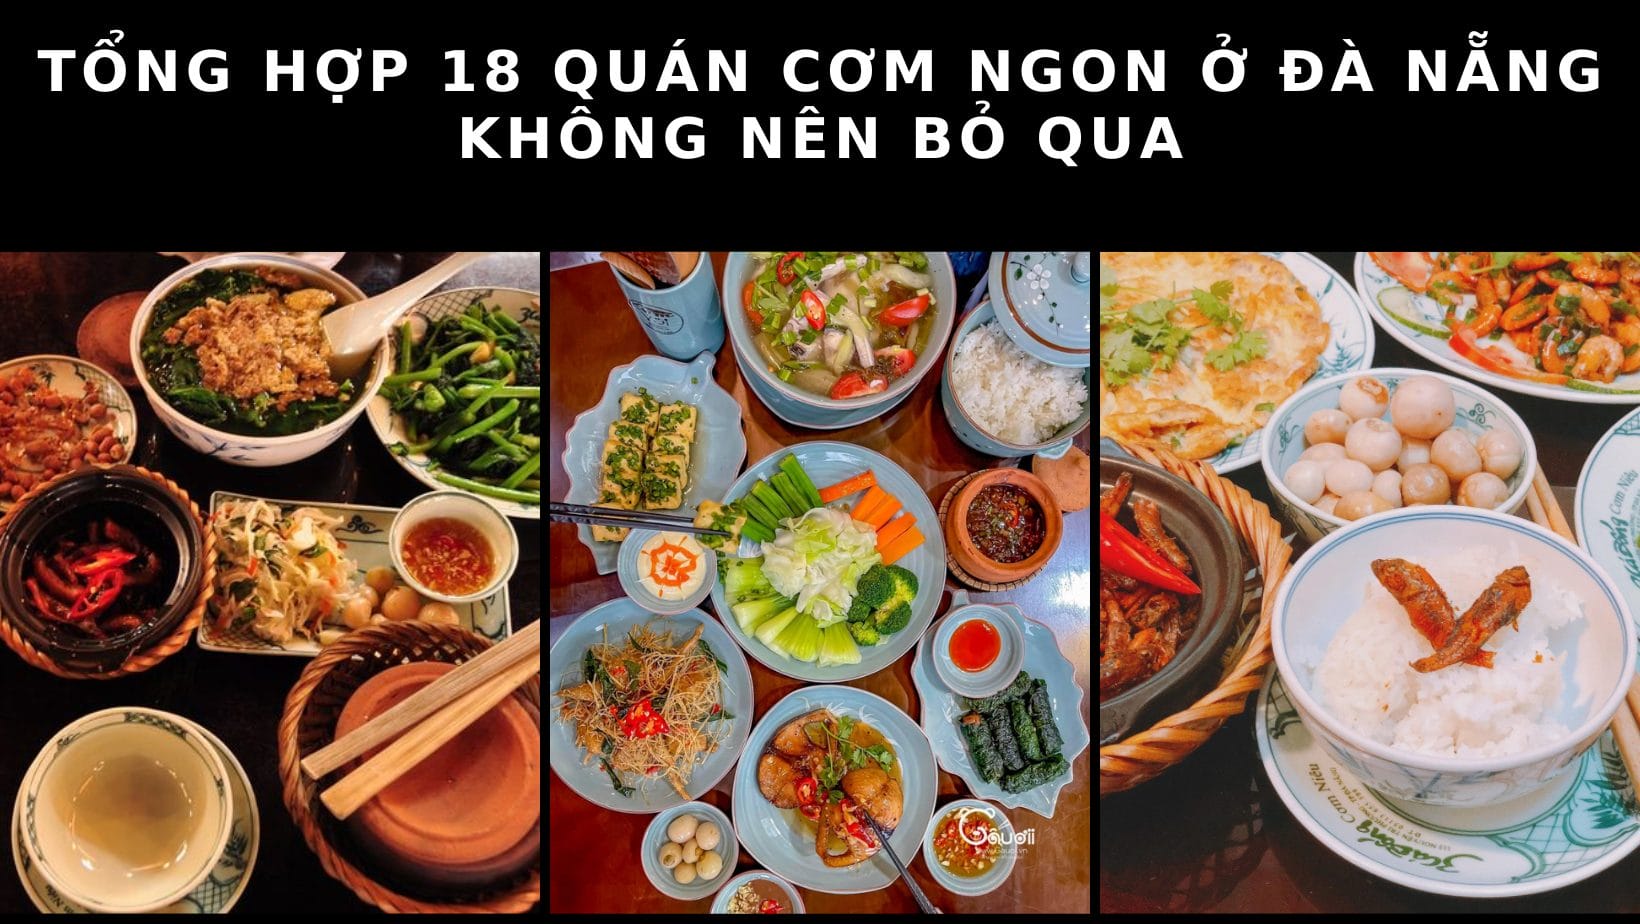 Tổng hợp 18 quán cơm ngon ở Đà Nẵng không nên bỏ qua